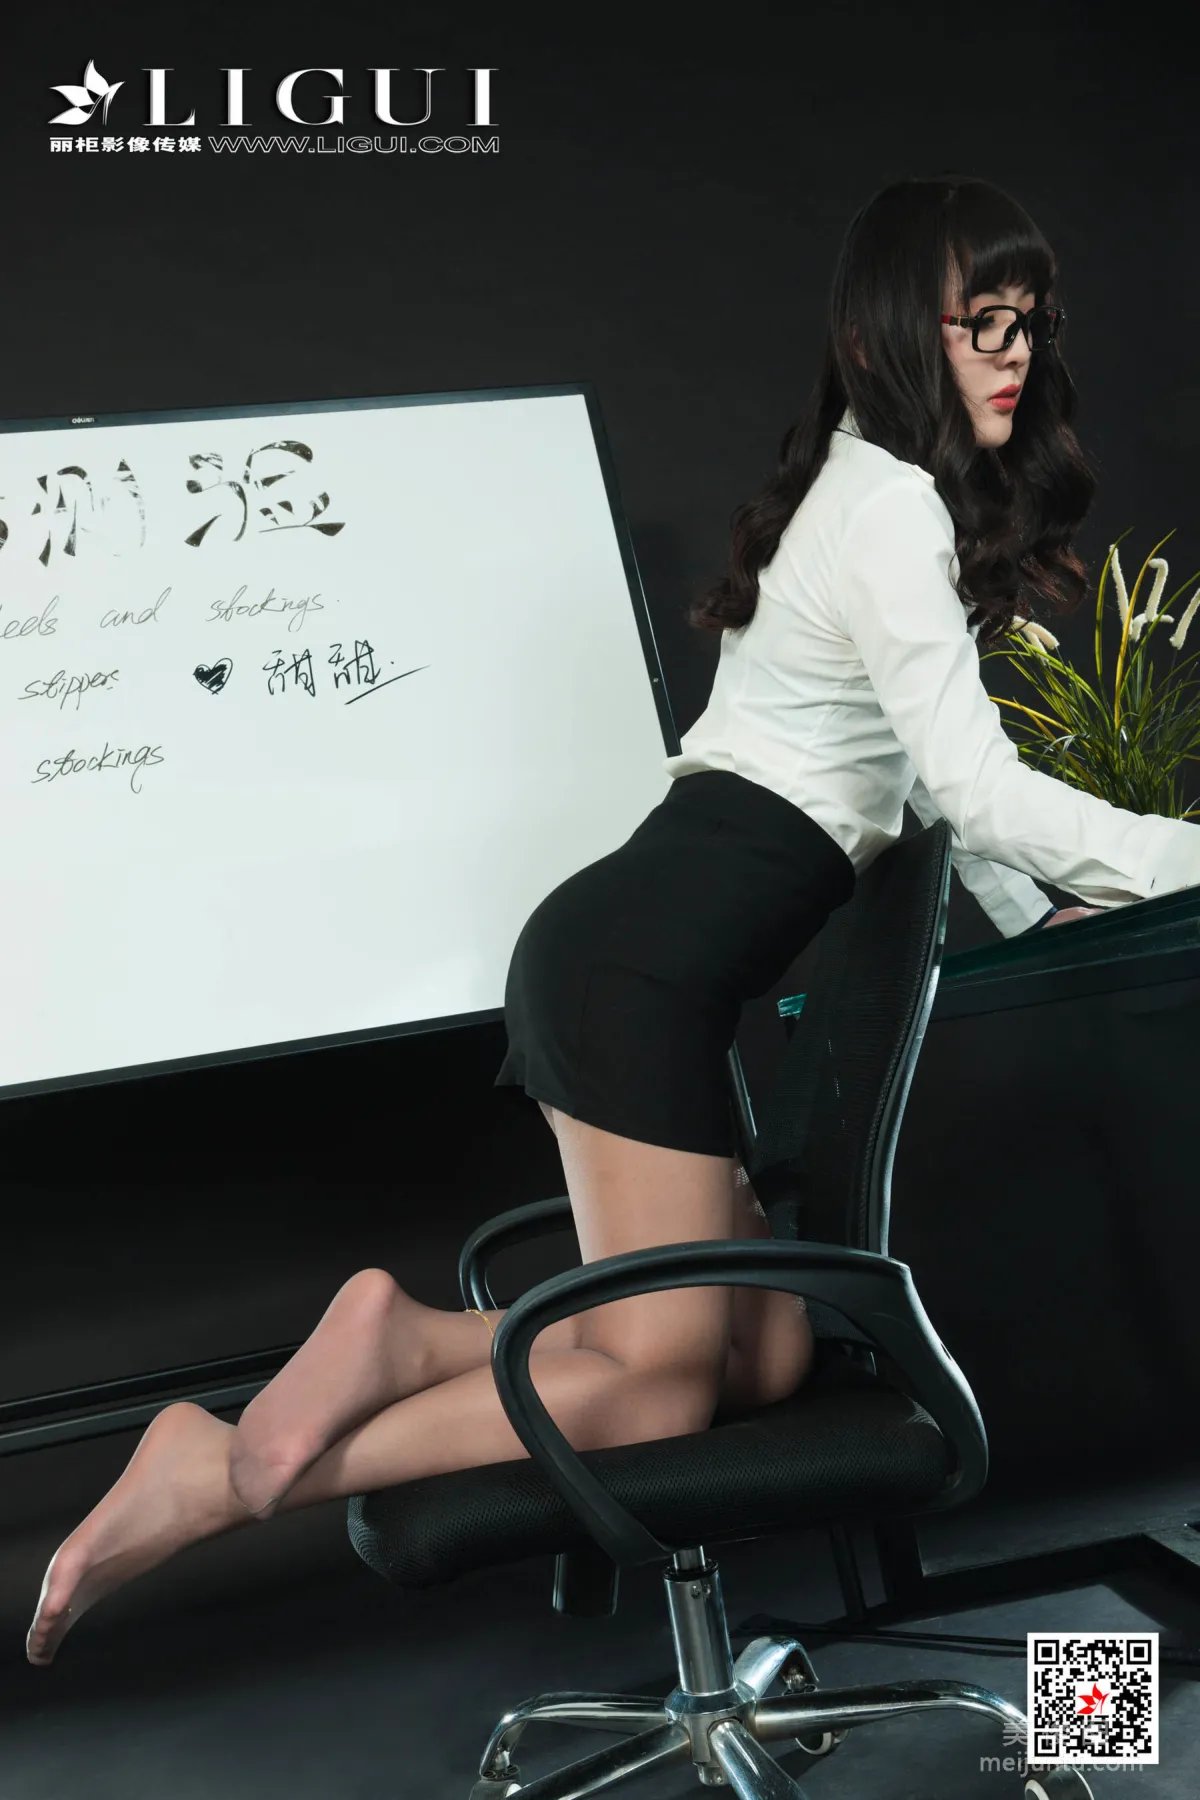 [丽柜Ligui] 网络丽人 Model 芒果 - 灰丝OL长腿秘书31